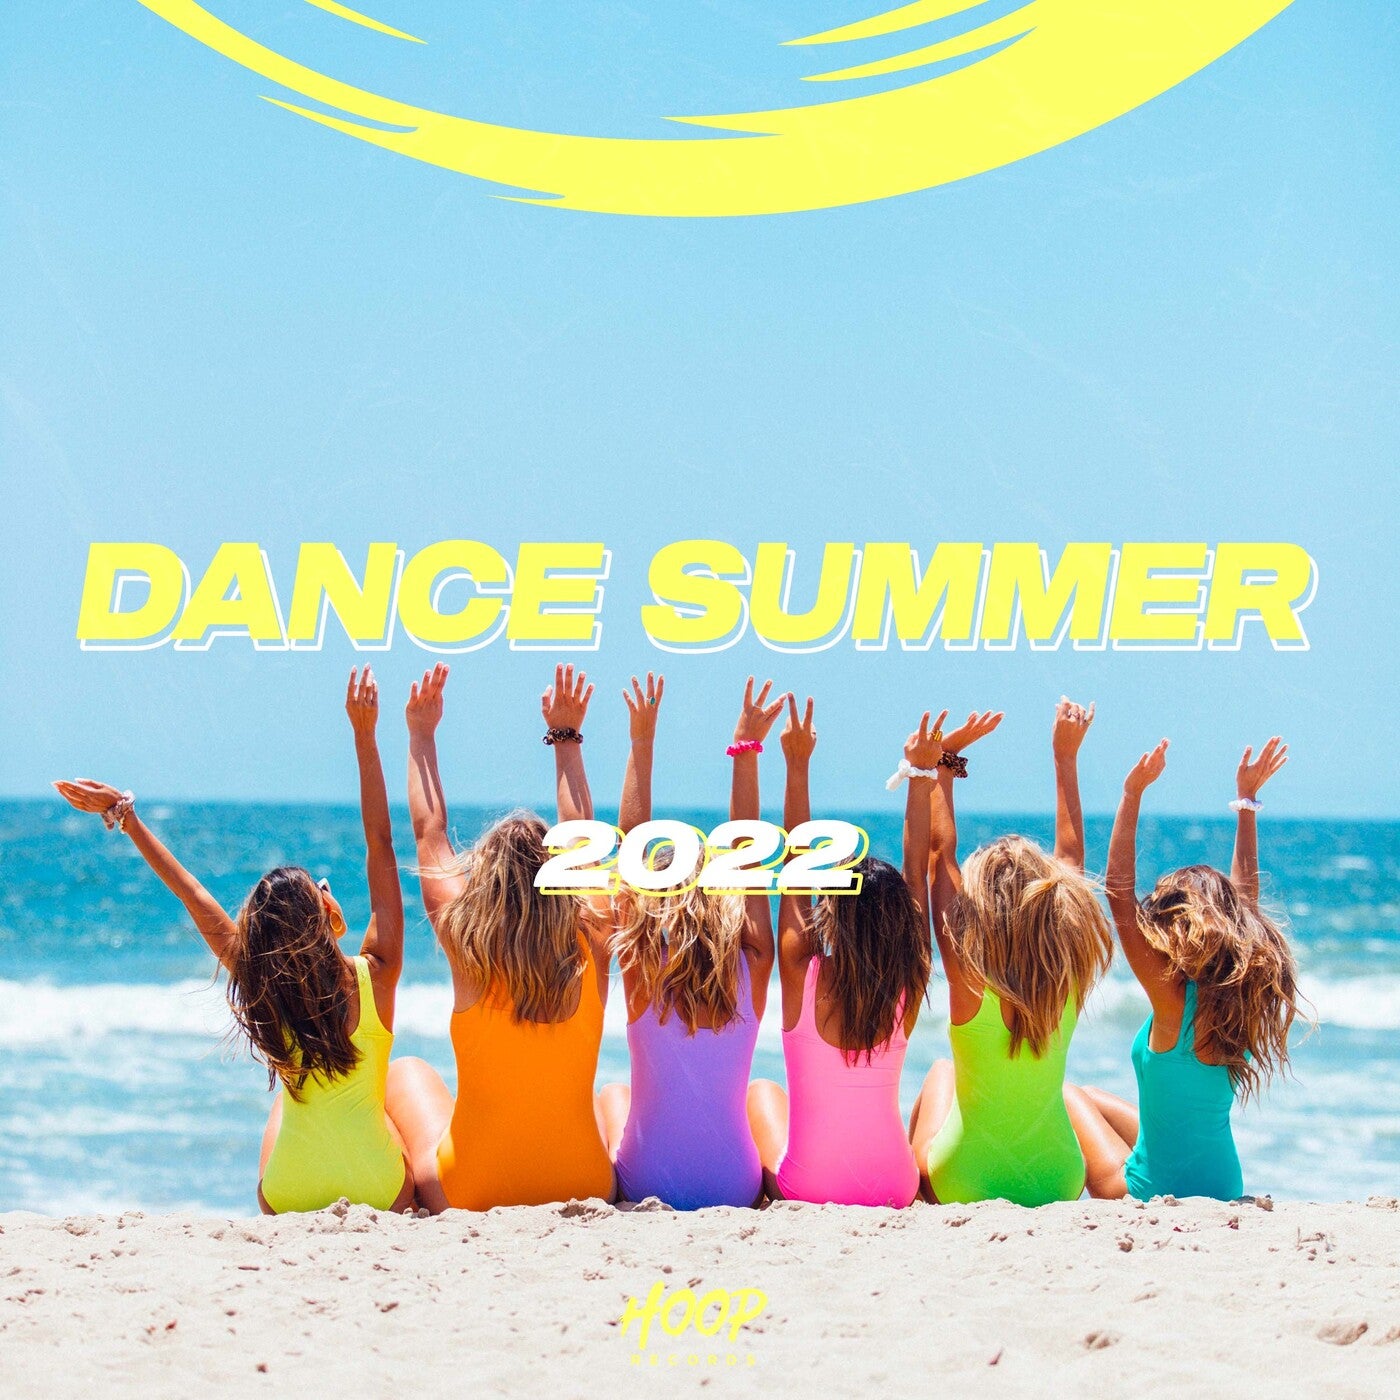 Summer dance remix. Доски Summer Dance. Хит лета 2022 фото надписи.